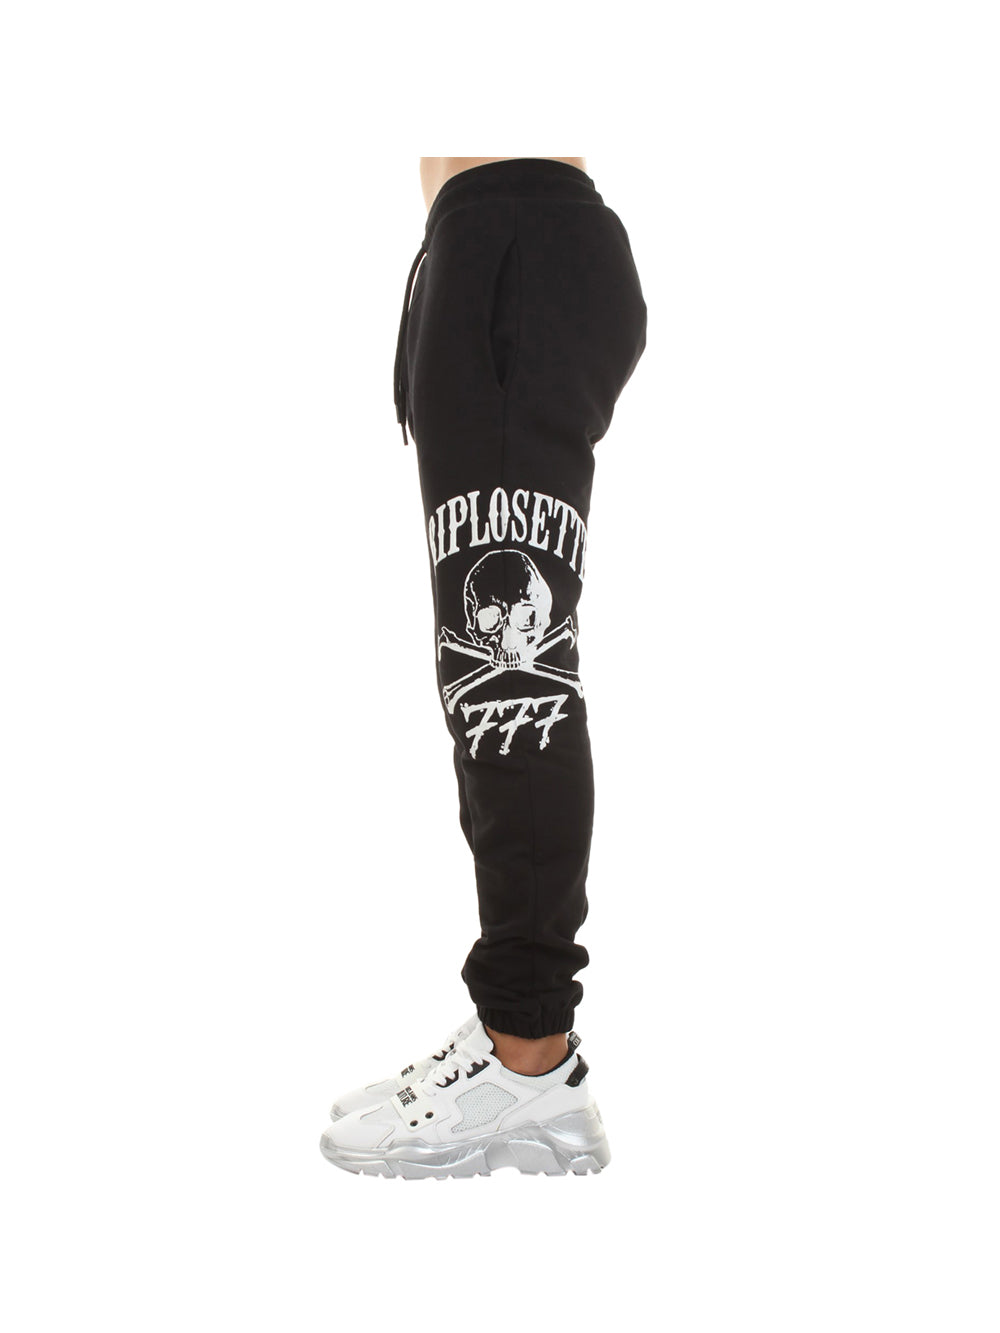 Pantalone di tuta Uomo Nero con maxi logo brand